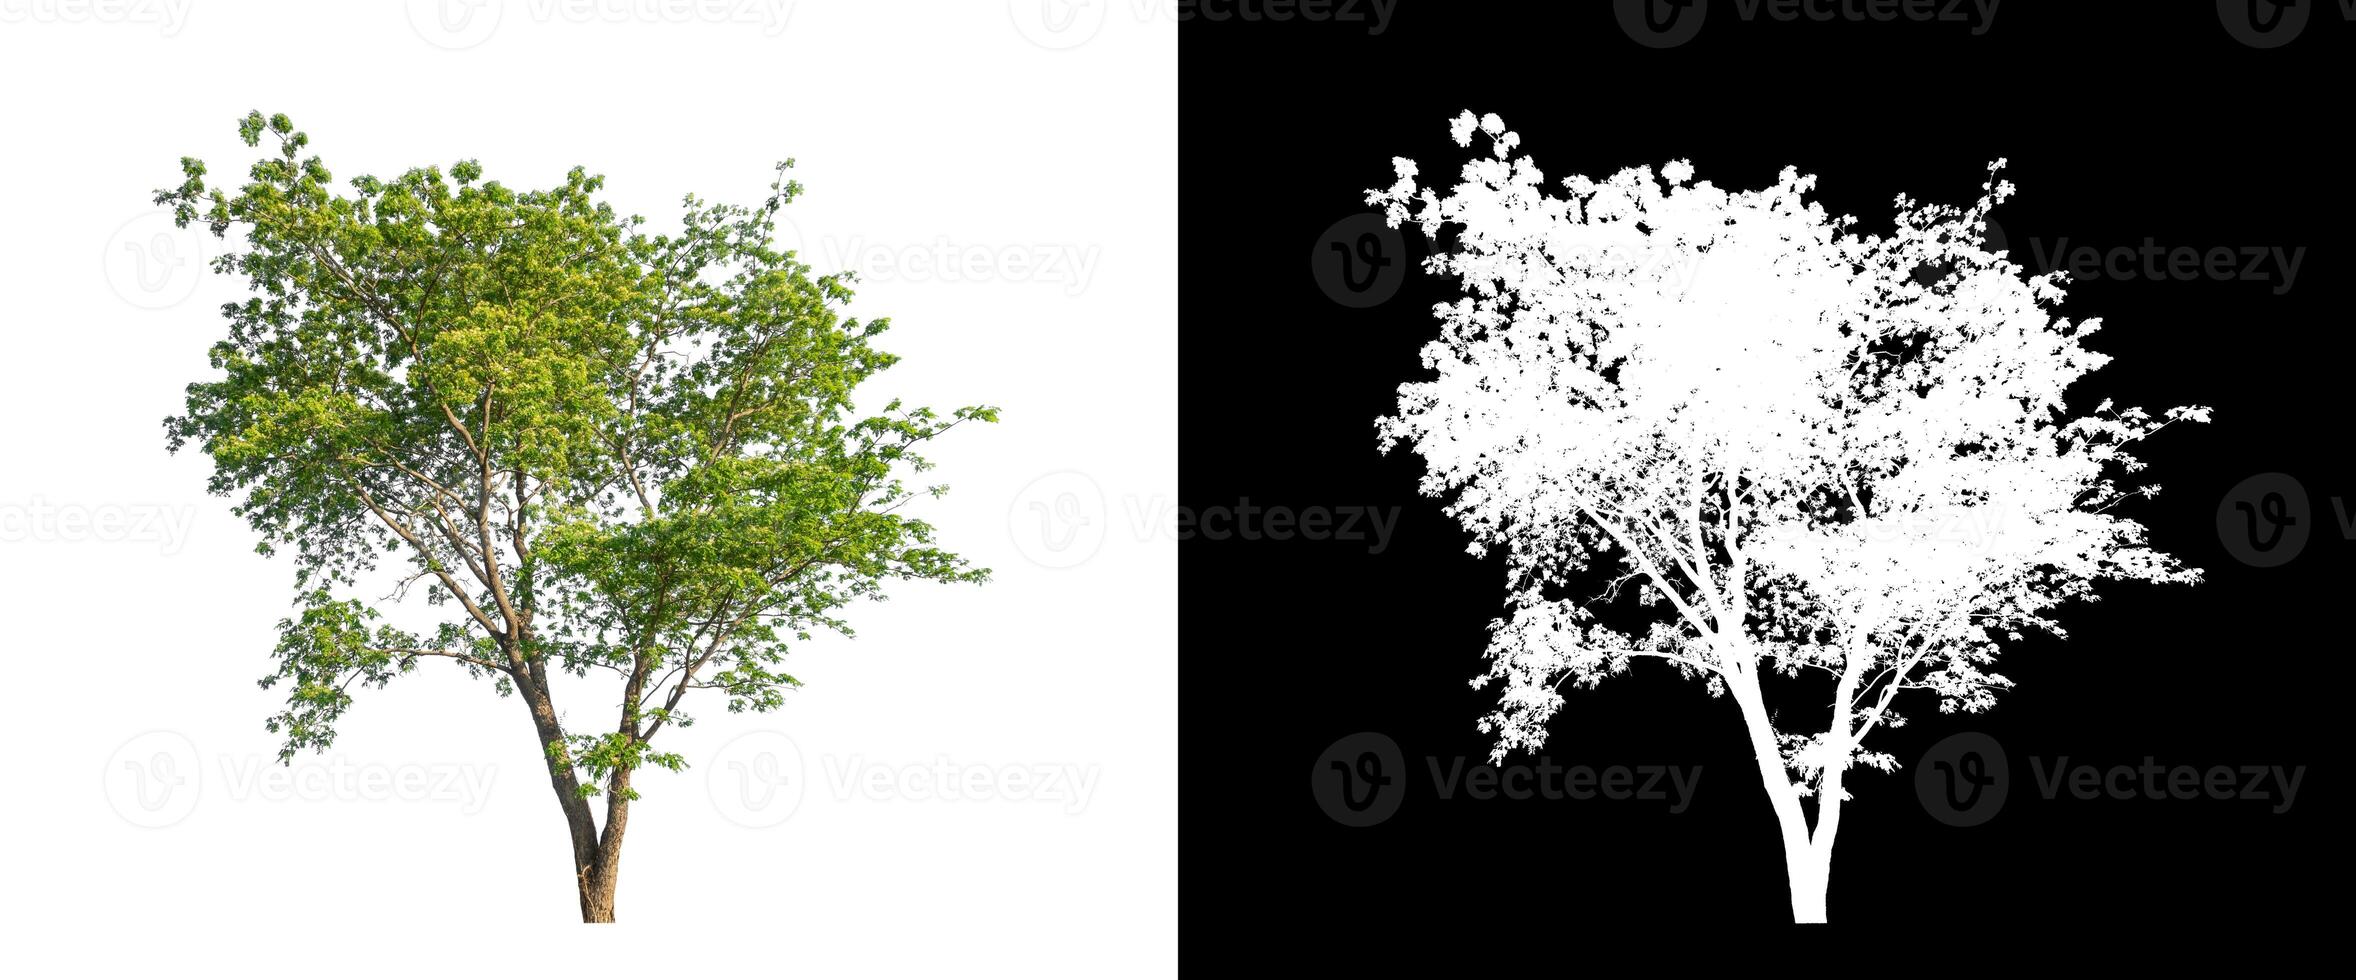 árbol sobre fondo de imagen transparente con ruta de recorte, árbol único con ruta de recorte y canal alfa sobre fondo negro foto